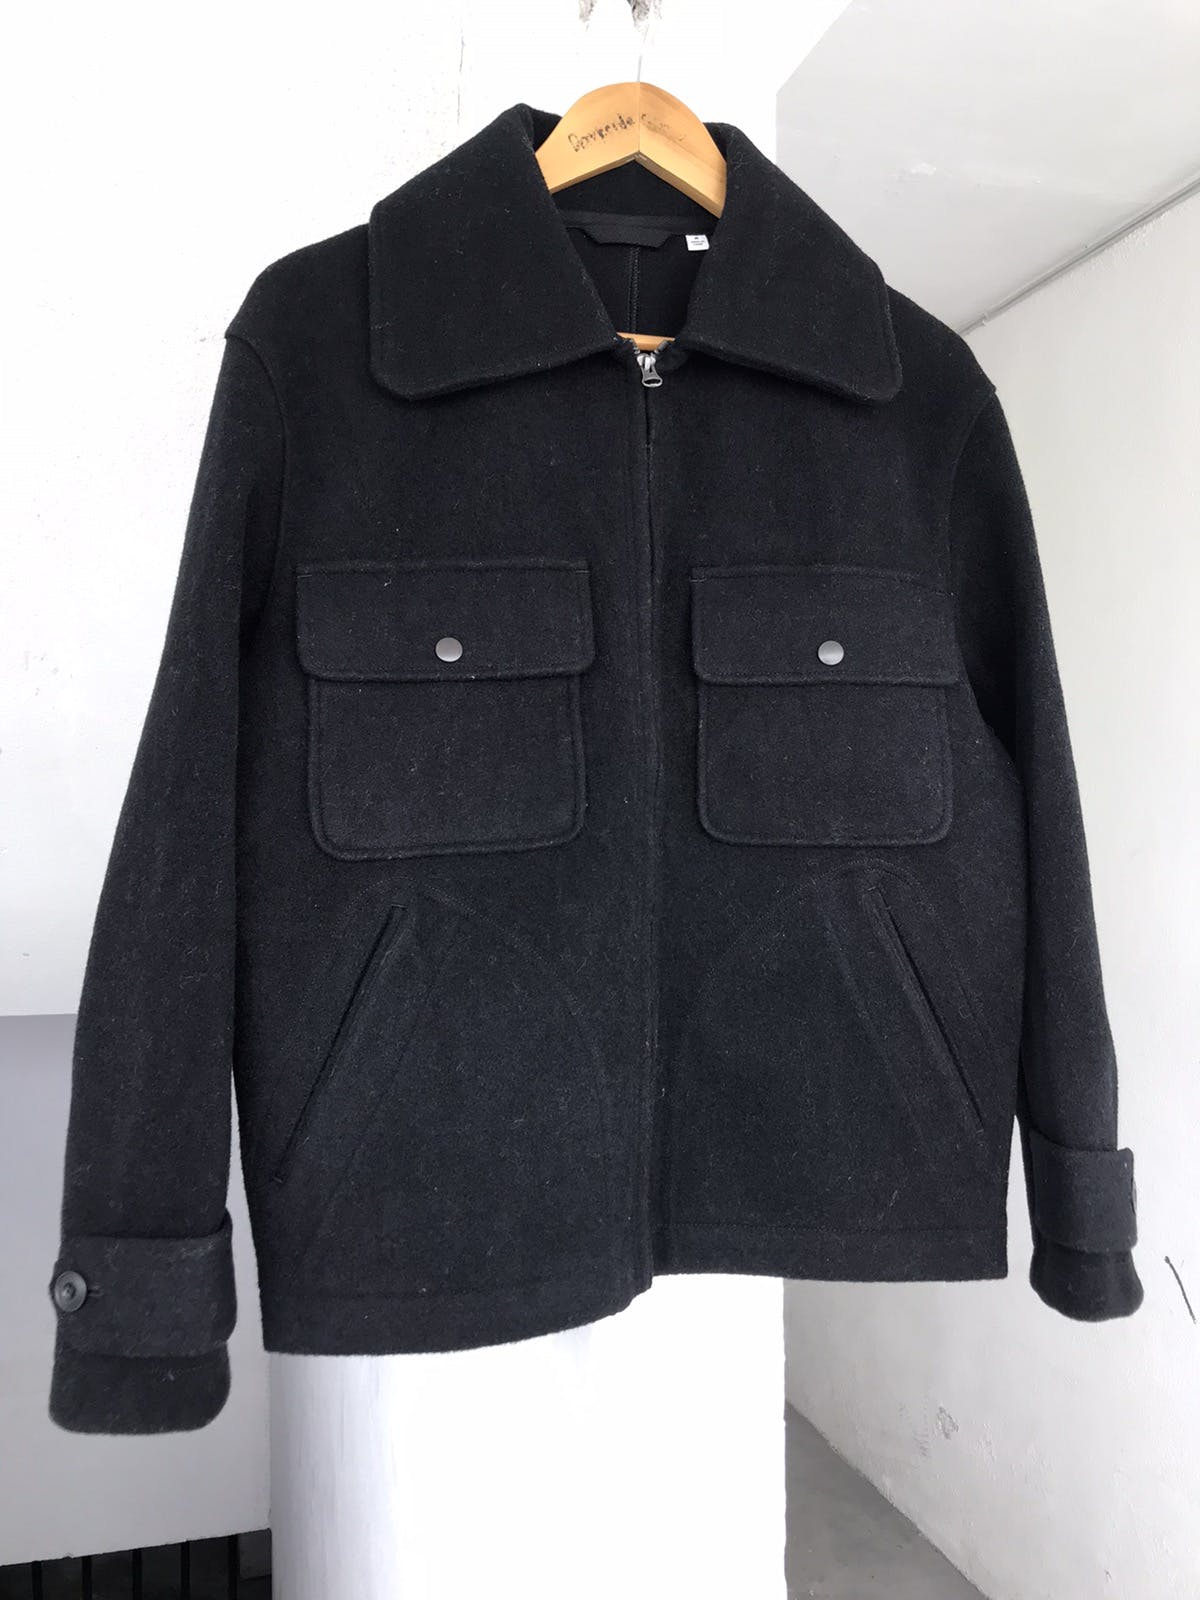 Christophe lemaire x ut Wool jacket - 2